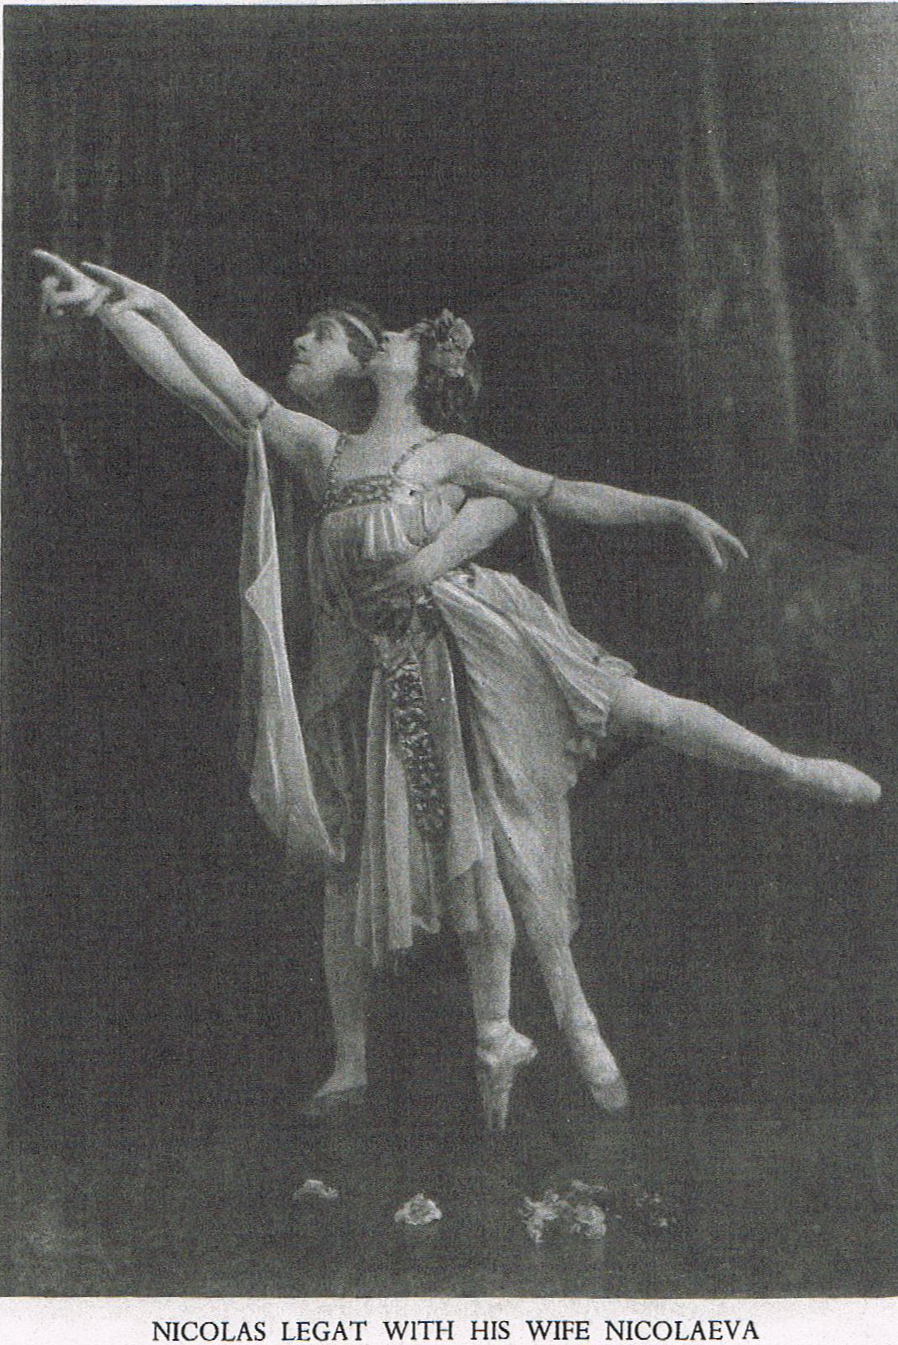 Nicolai and Nicolaeva Legat